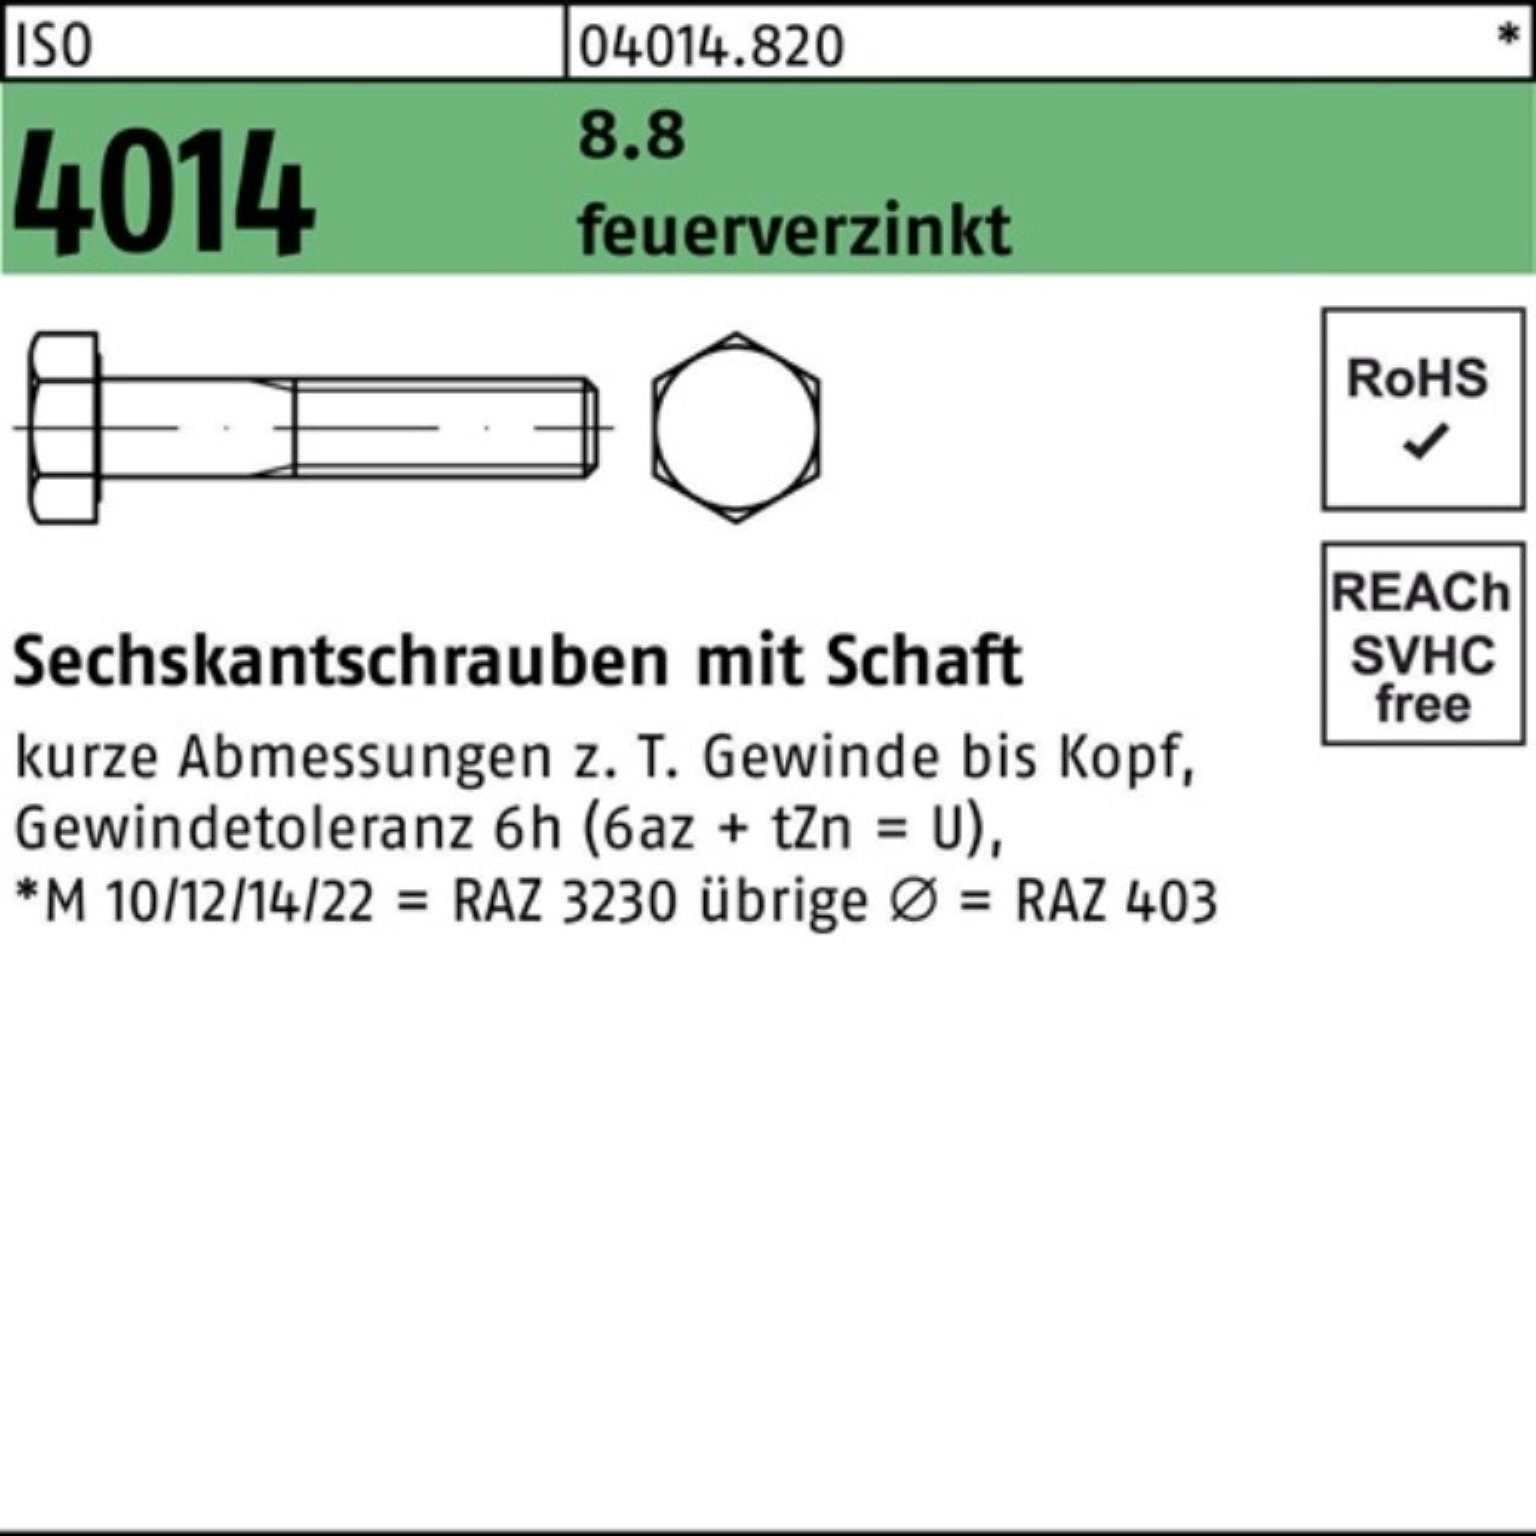 Bufab Sechskantschraube 100er Pack Sechskantschraube ISO 4014 Schaft M30x 160 8.8 feuerverz. 1